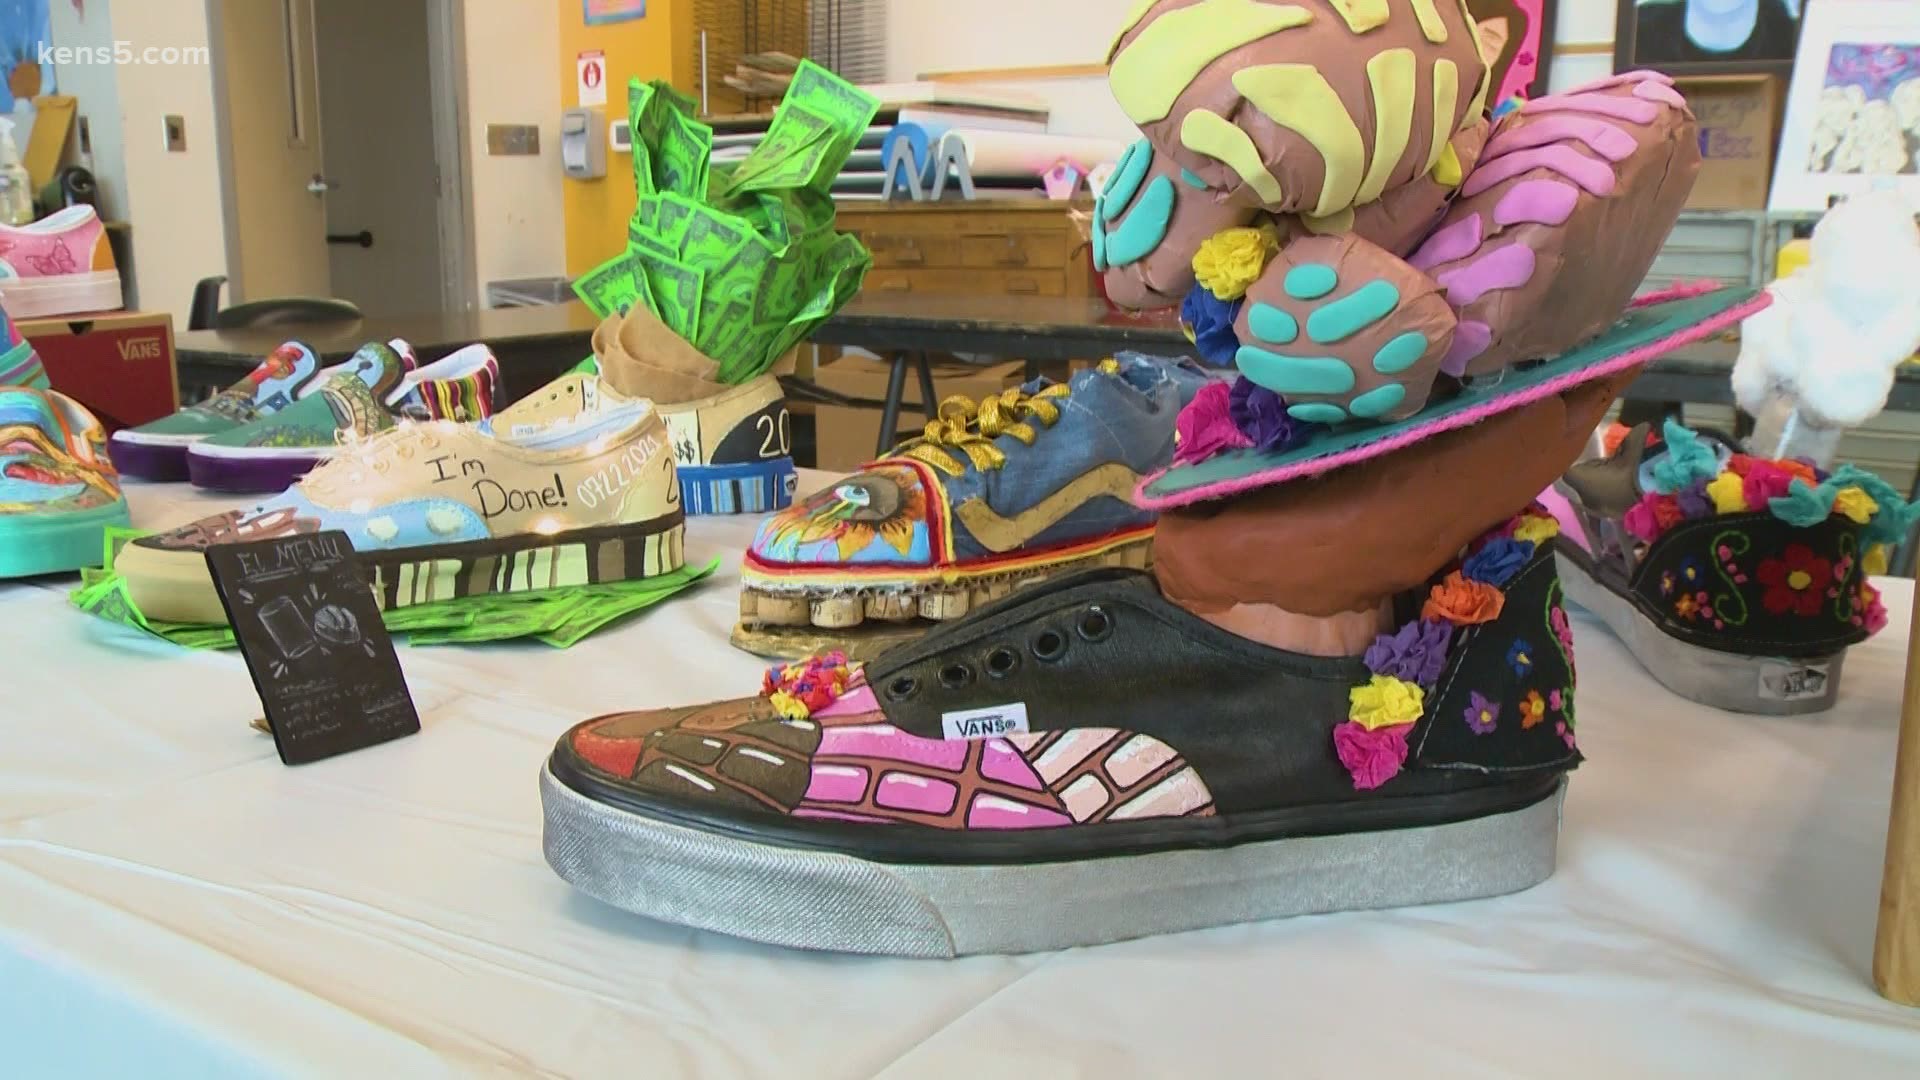 Edison High School art students win big in Vans art contest Made in